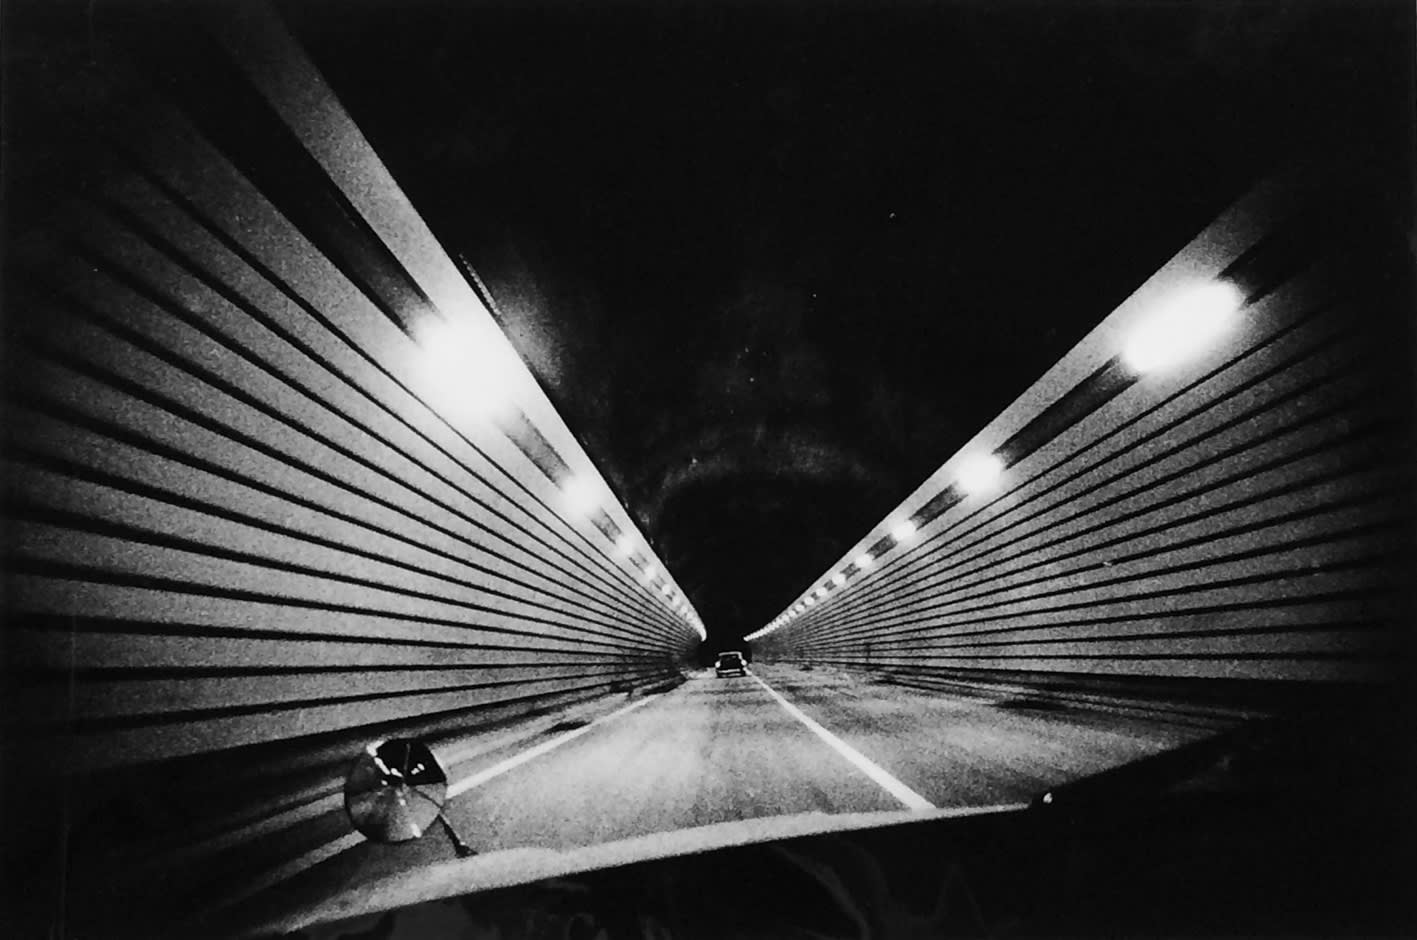 Daido Moriyama 森山大道, Tomei Expressway《國道》, 1972